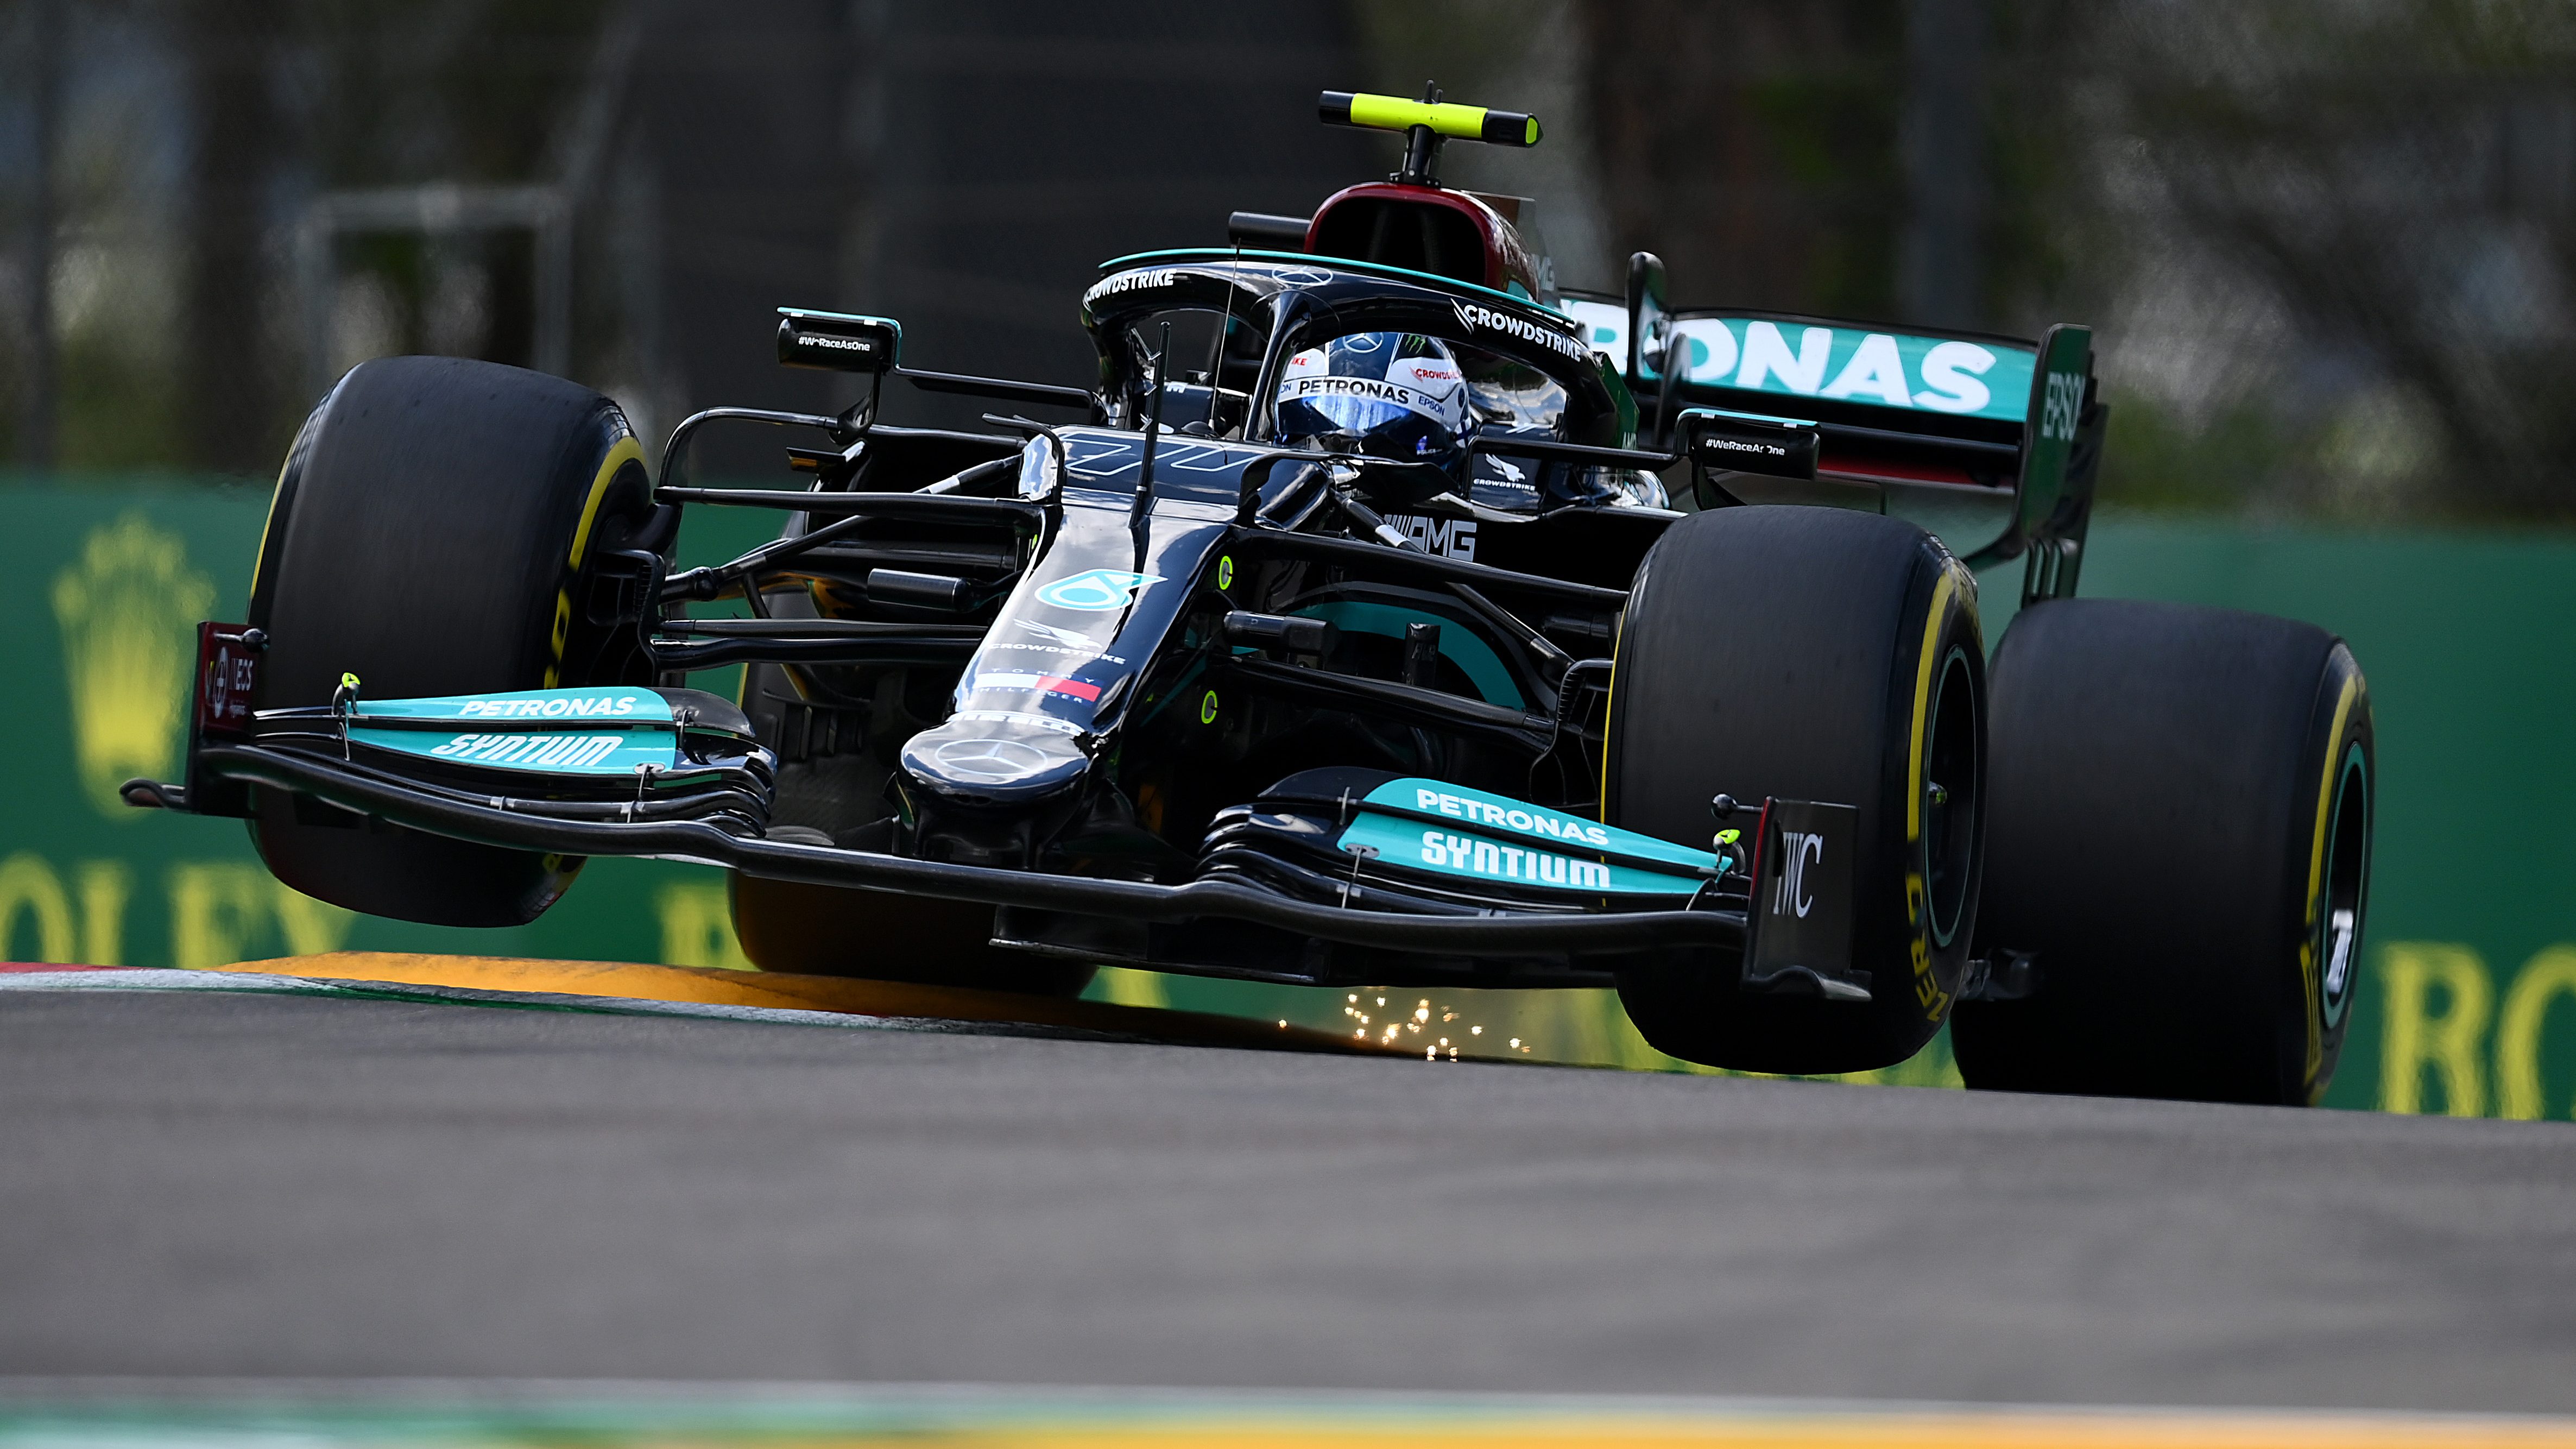 Valtteri Bottas, Lewis Hamilton are fastest in F1 practice sessions